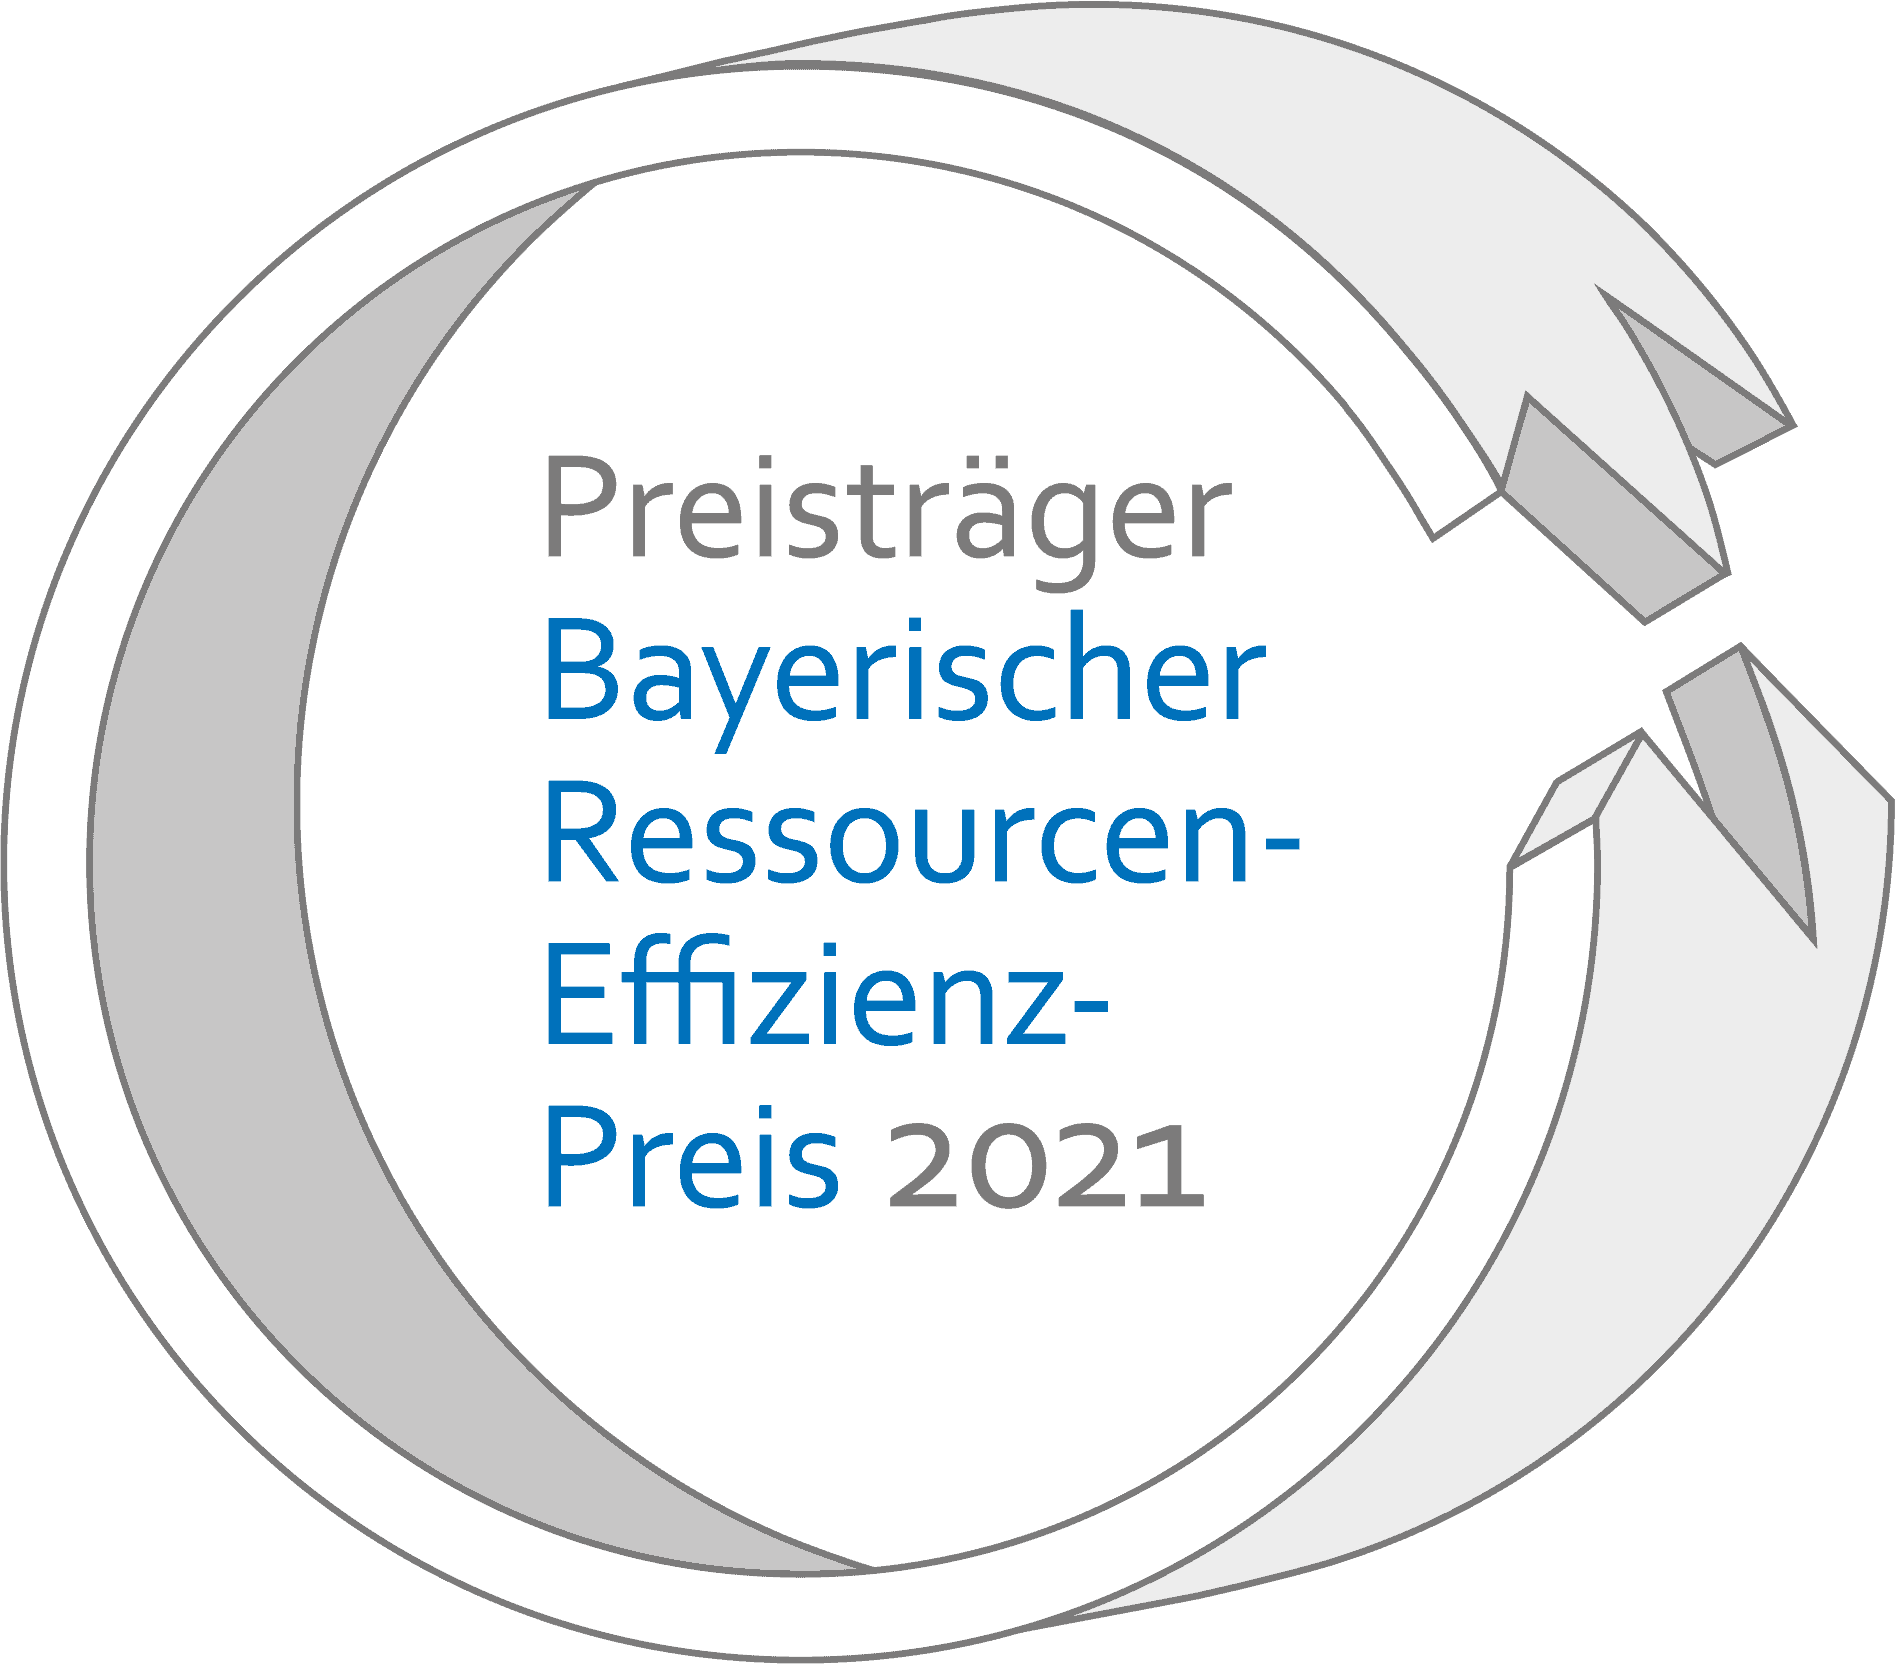 Preisträger Bayerischer Ressourcen-Effizienz-Preis 2021